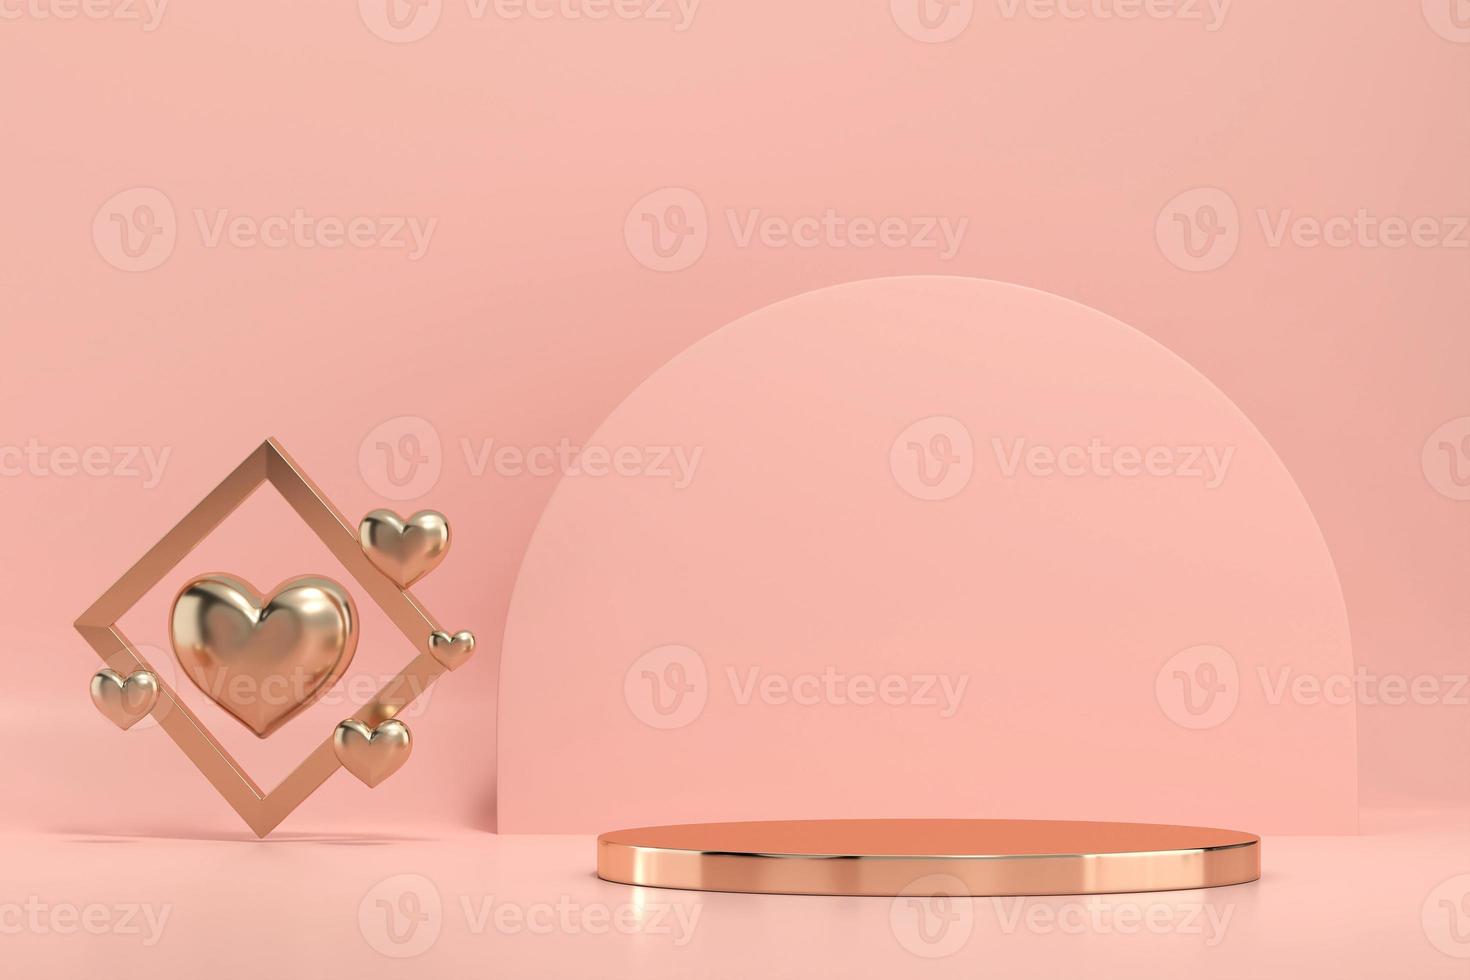 piattaforma del podio della fase dell'oro di San Valentino con la decorazione dei cuori per la vetrina del prodotto, rendering 3d foto